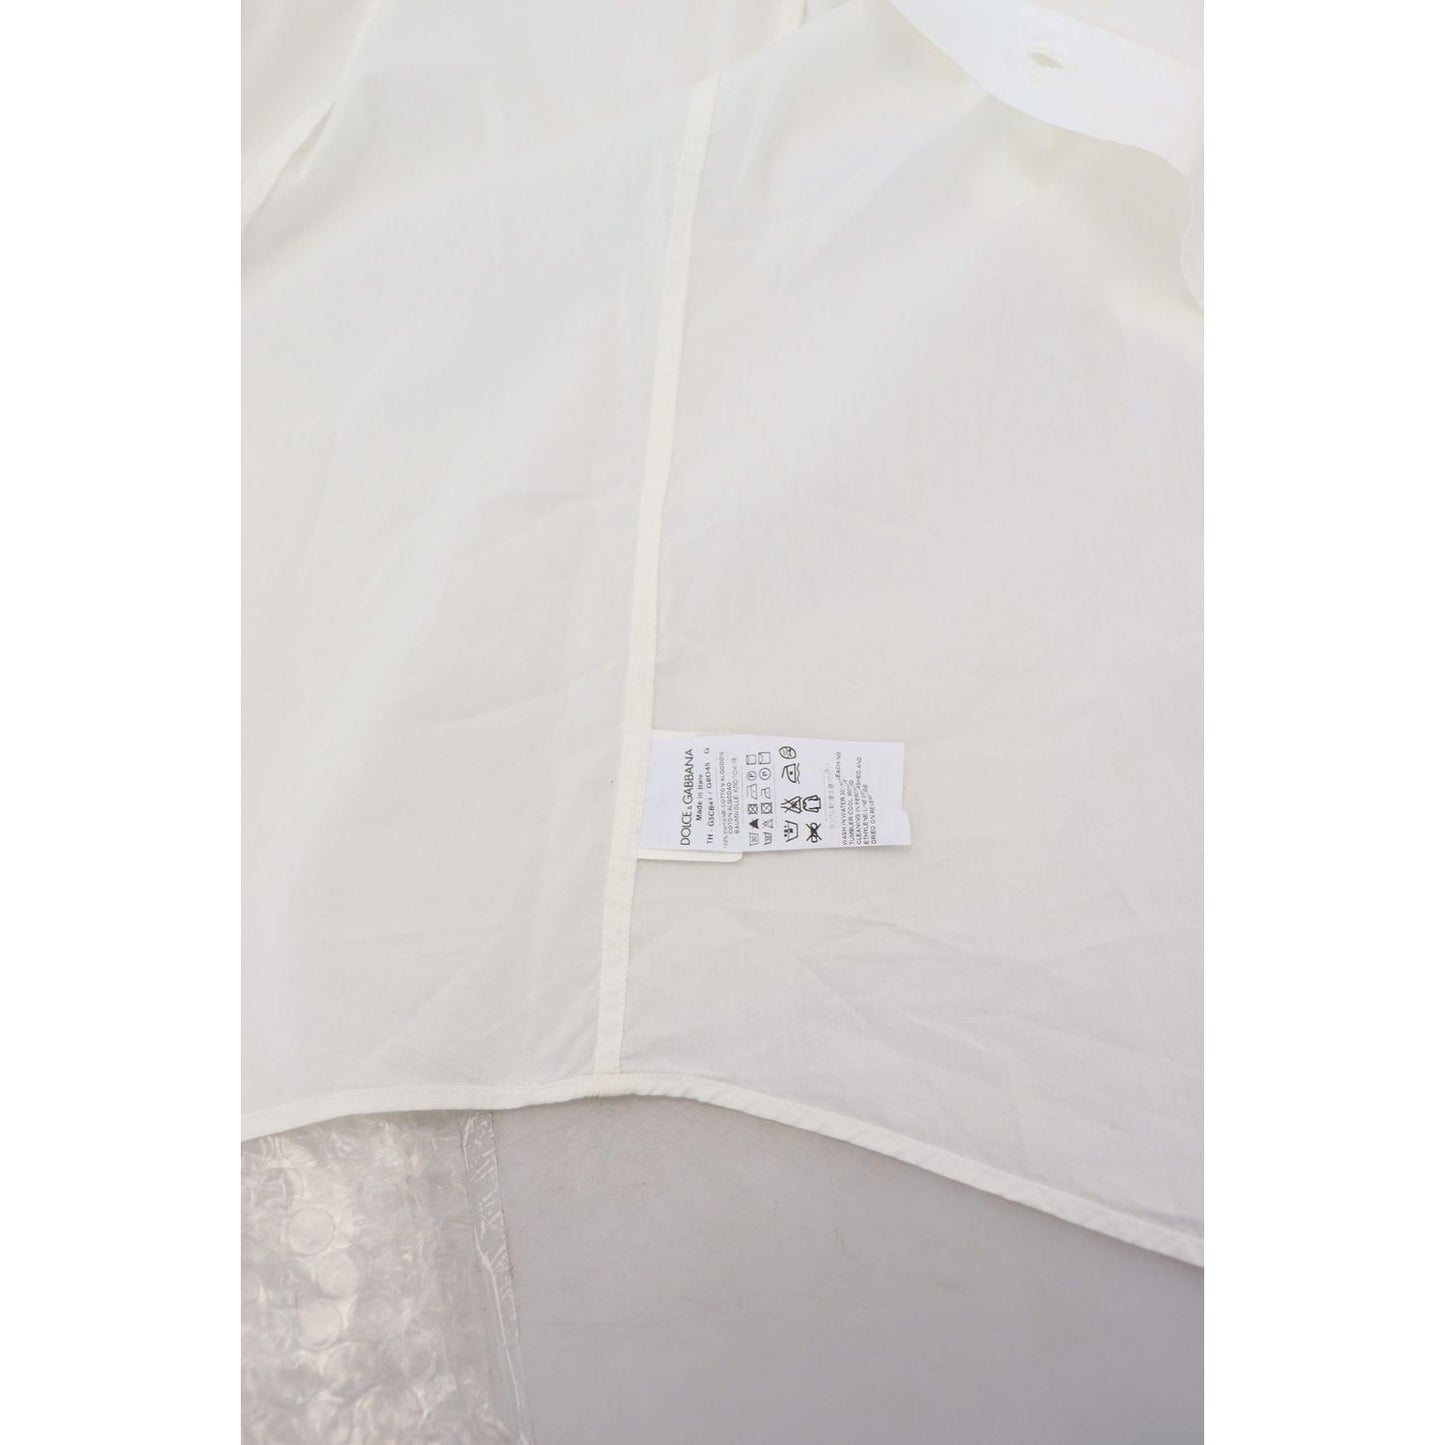 Dolce & Gabbana Elegant Slim Fit Dress Shirt white-cotton-slim-fit-dress-shirt IMG_8075-scaled-efe01a7f-58e.jpg